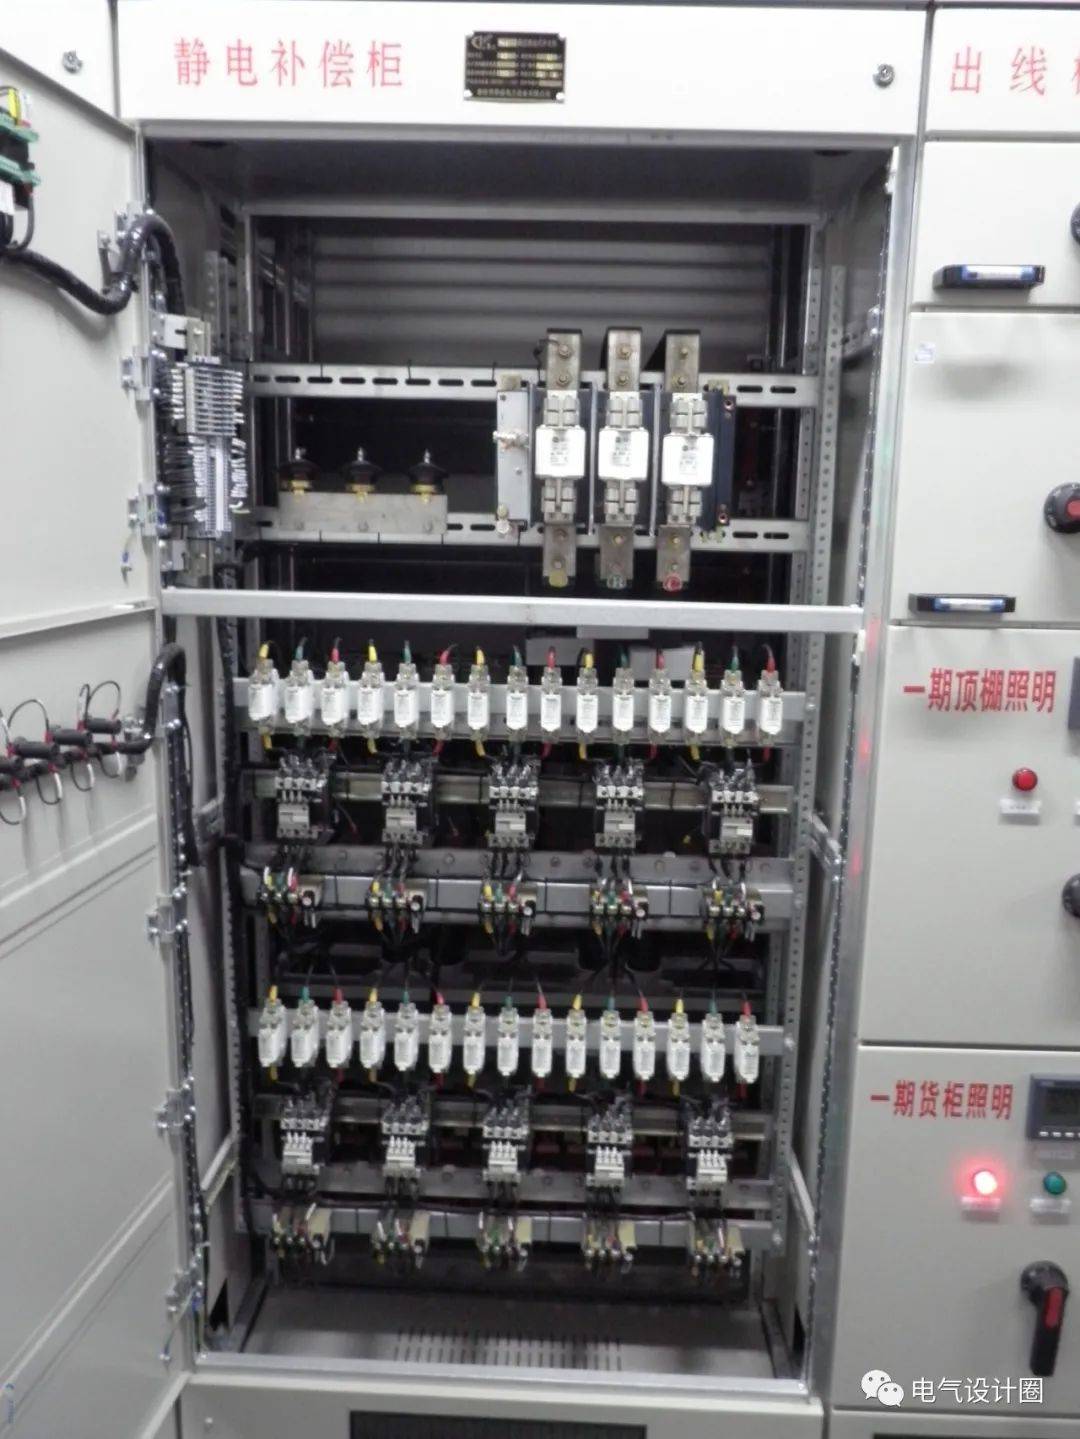 变配电所布置的主要设备有:6(10)kv成套配电装置,配电变压器,低压